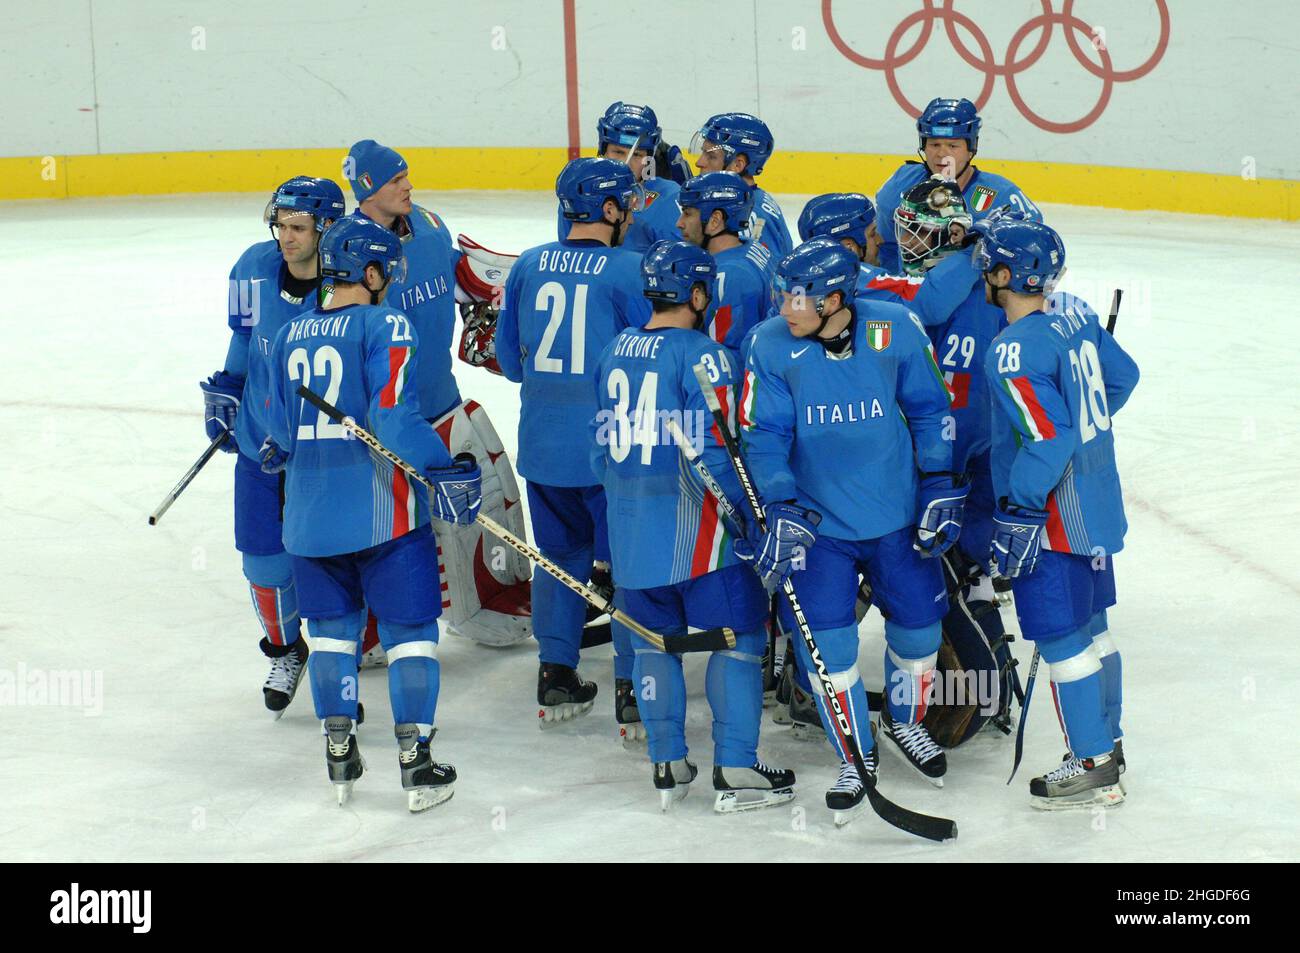 Olympics - National Teams of Ice Hockey